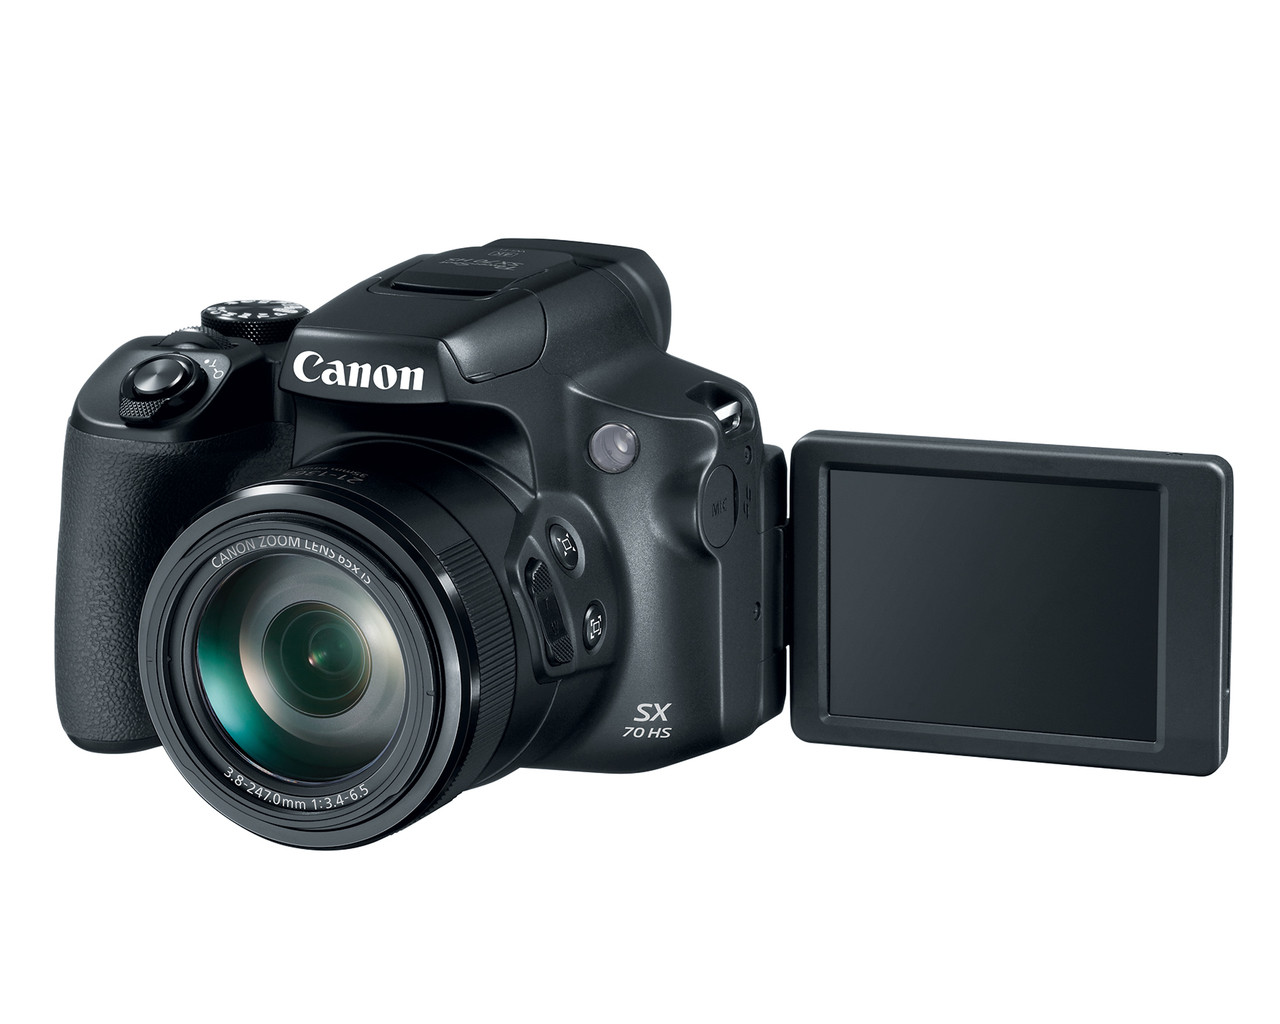 Canon PowerShot SX70 HS Digital | Bedfords.com